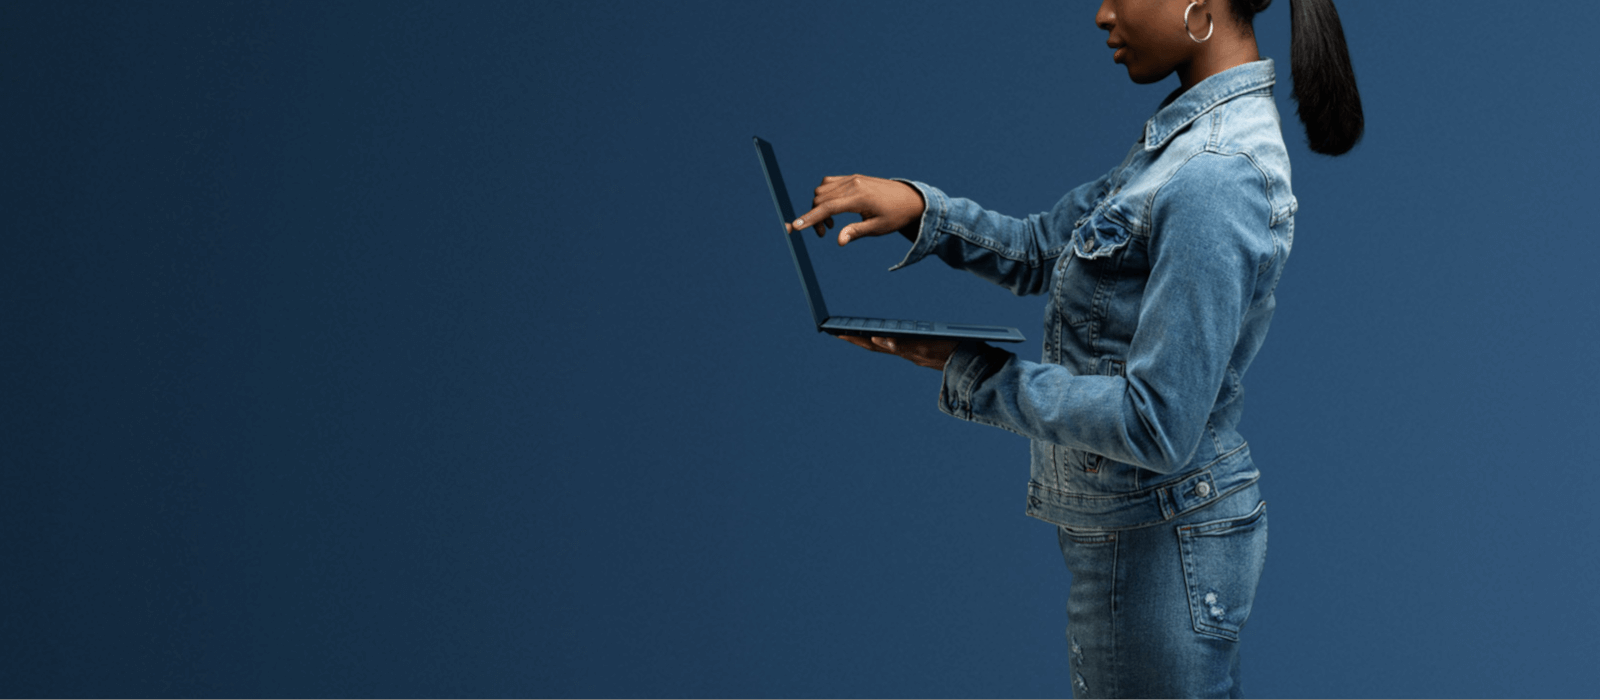 Une femme tape sur l'écran du Surface Laptop bleu cobalt 